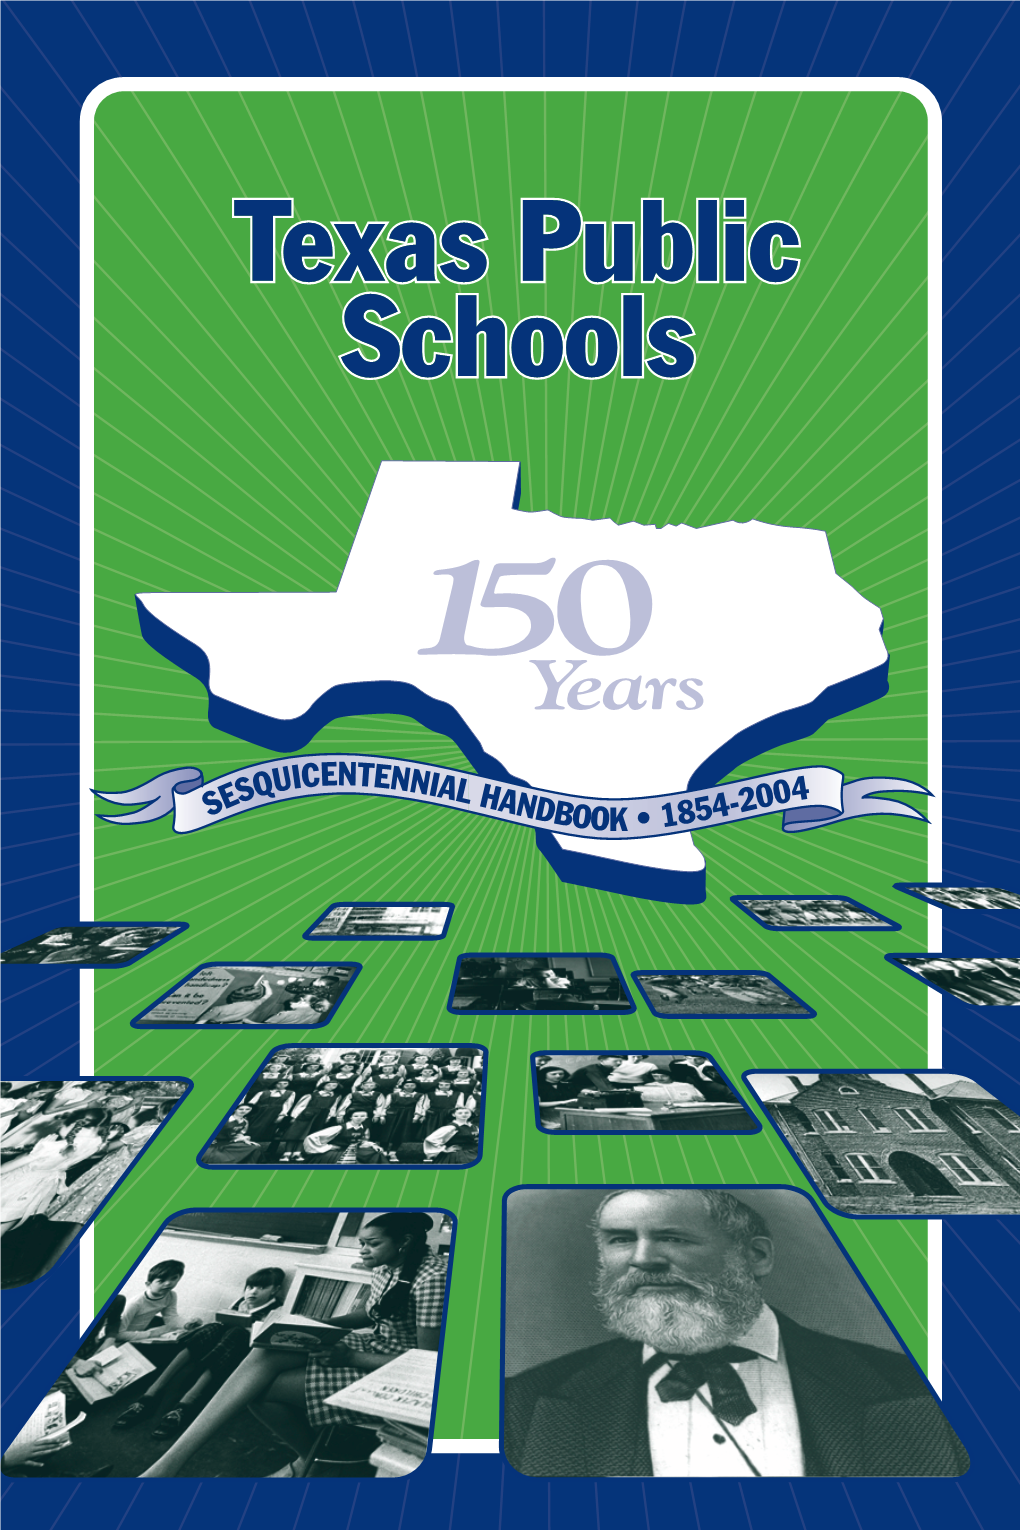 TPS Handbook, Sesquicentennial Handbook 1854-2004